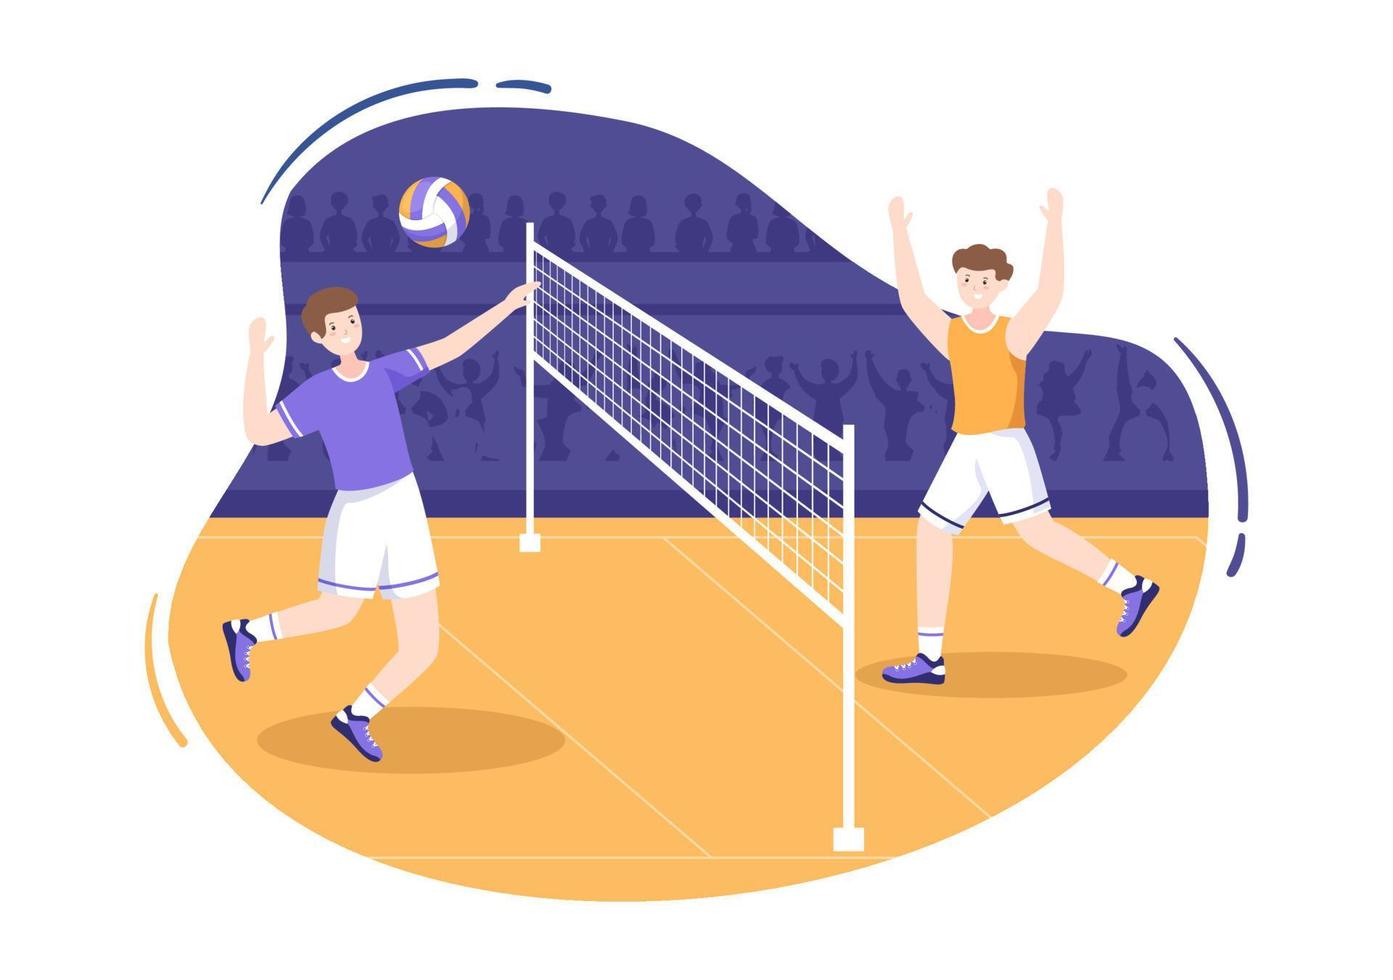 volleyboll spelare på attack för sport konkurrens serie inomhus i platt tecknad illustration vektor